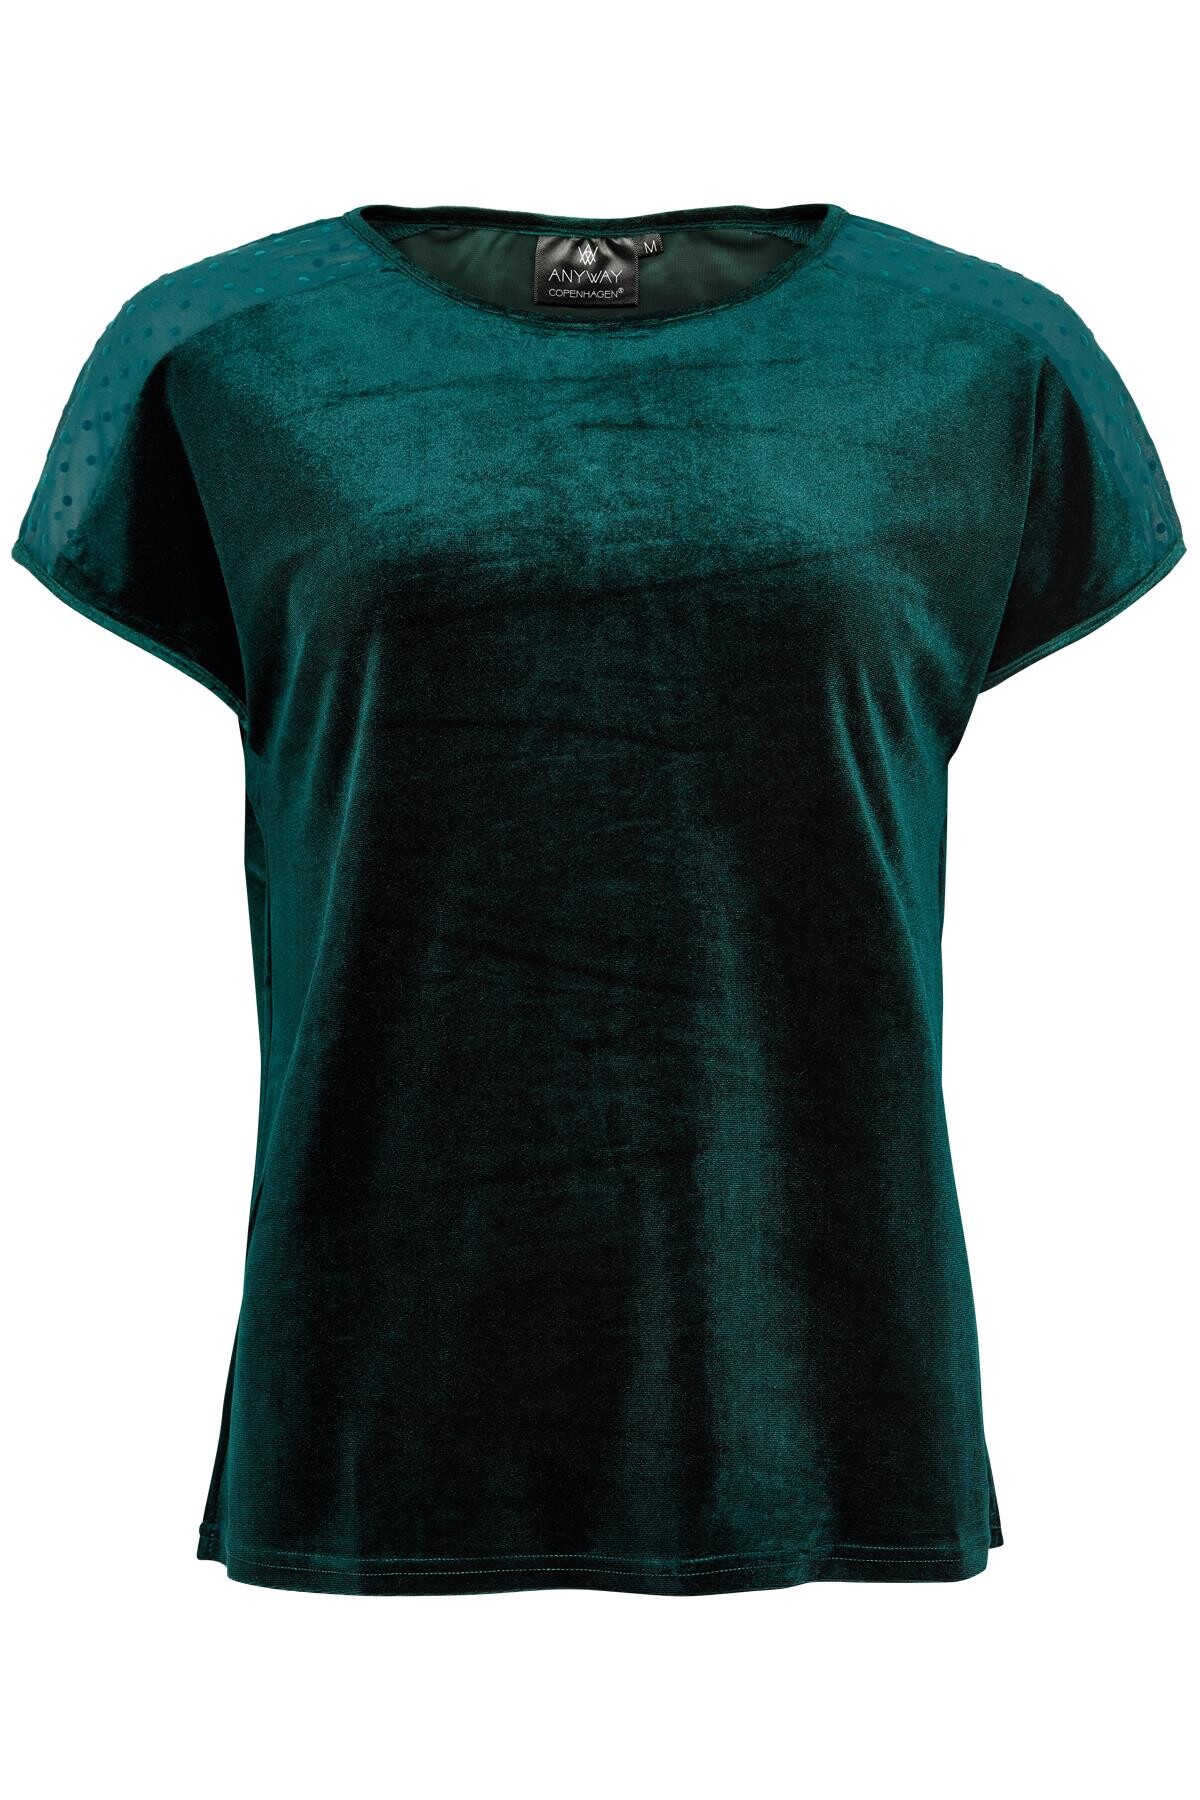 Anyway T-shirt Rc G, Farve: Grøn, Størrelse: L, Dame